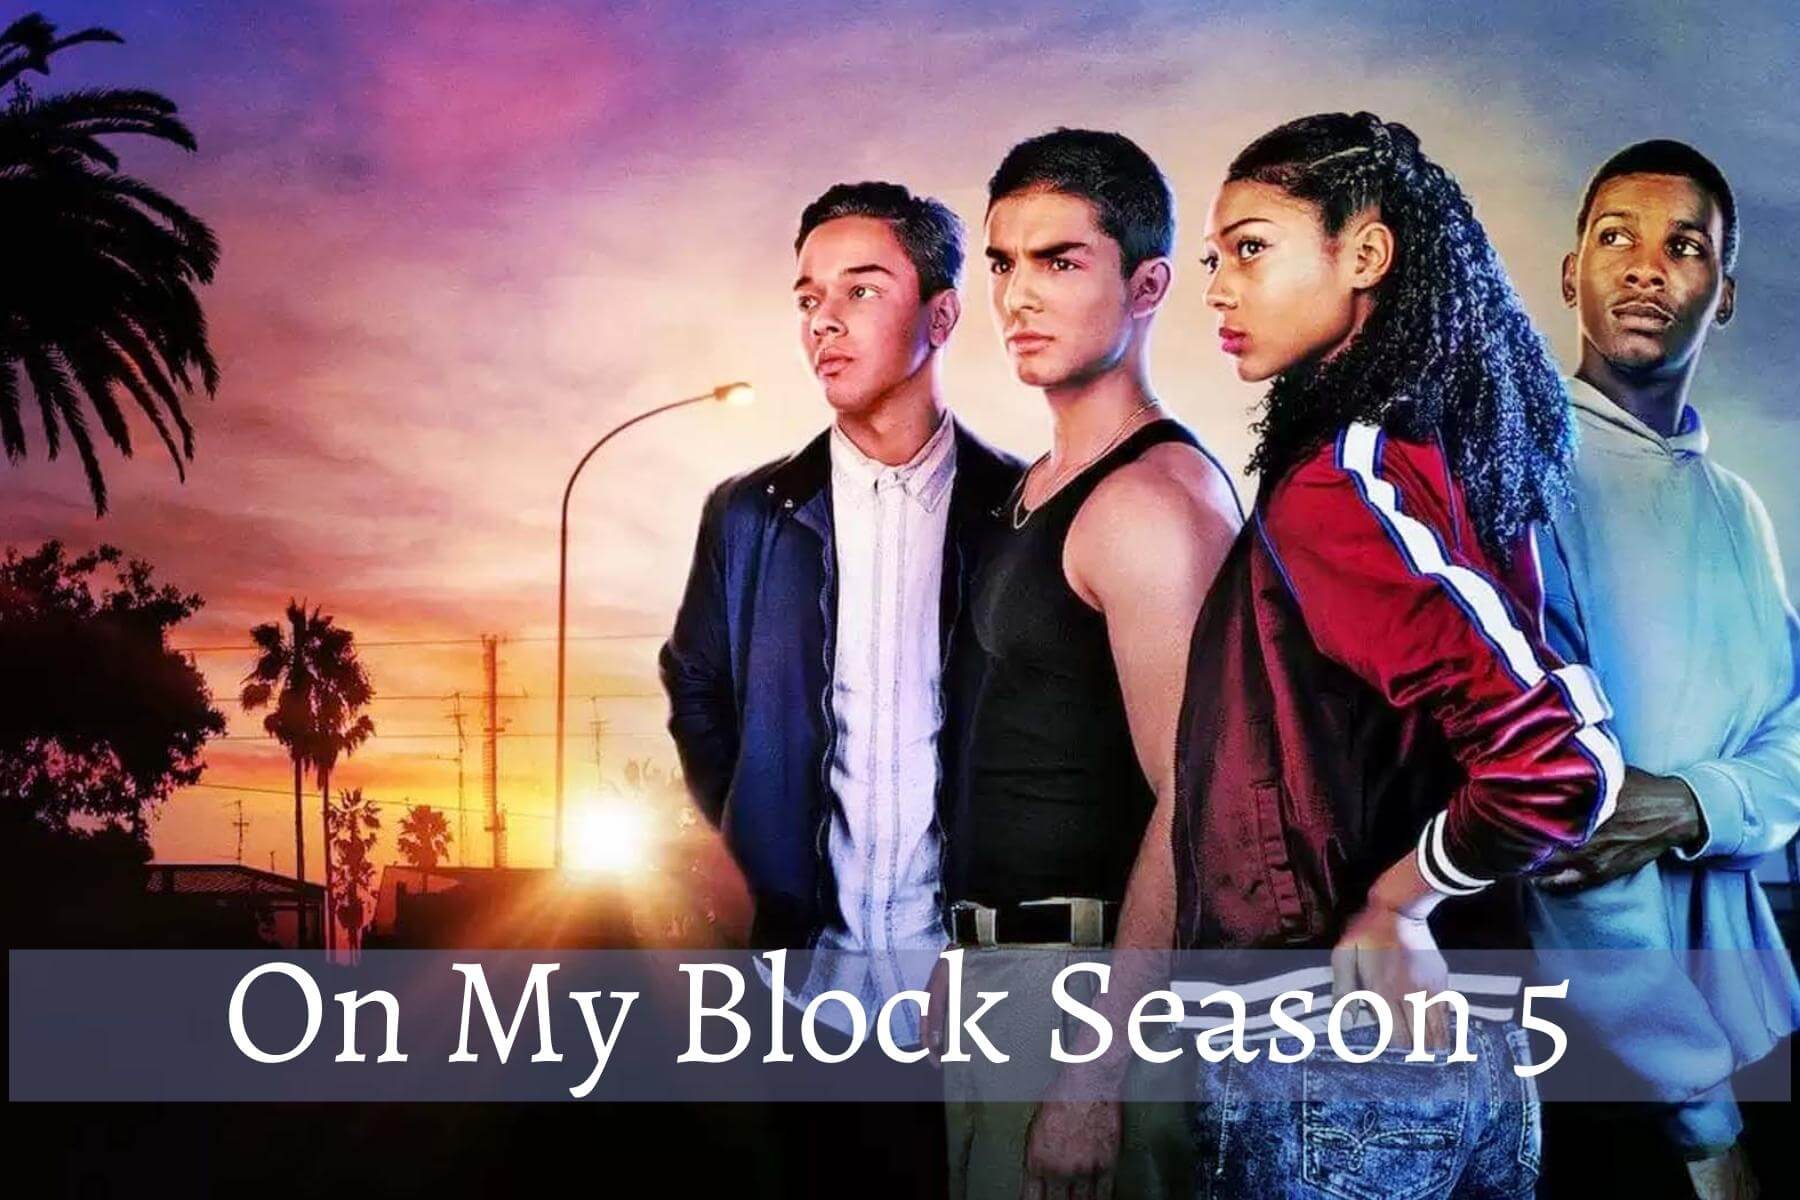 On My Block Season 5